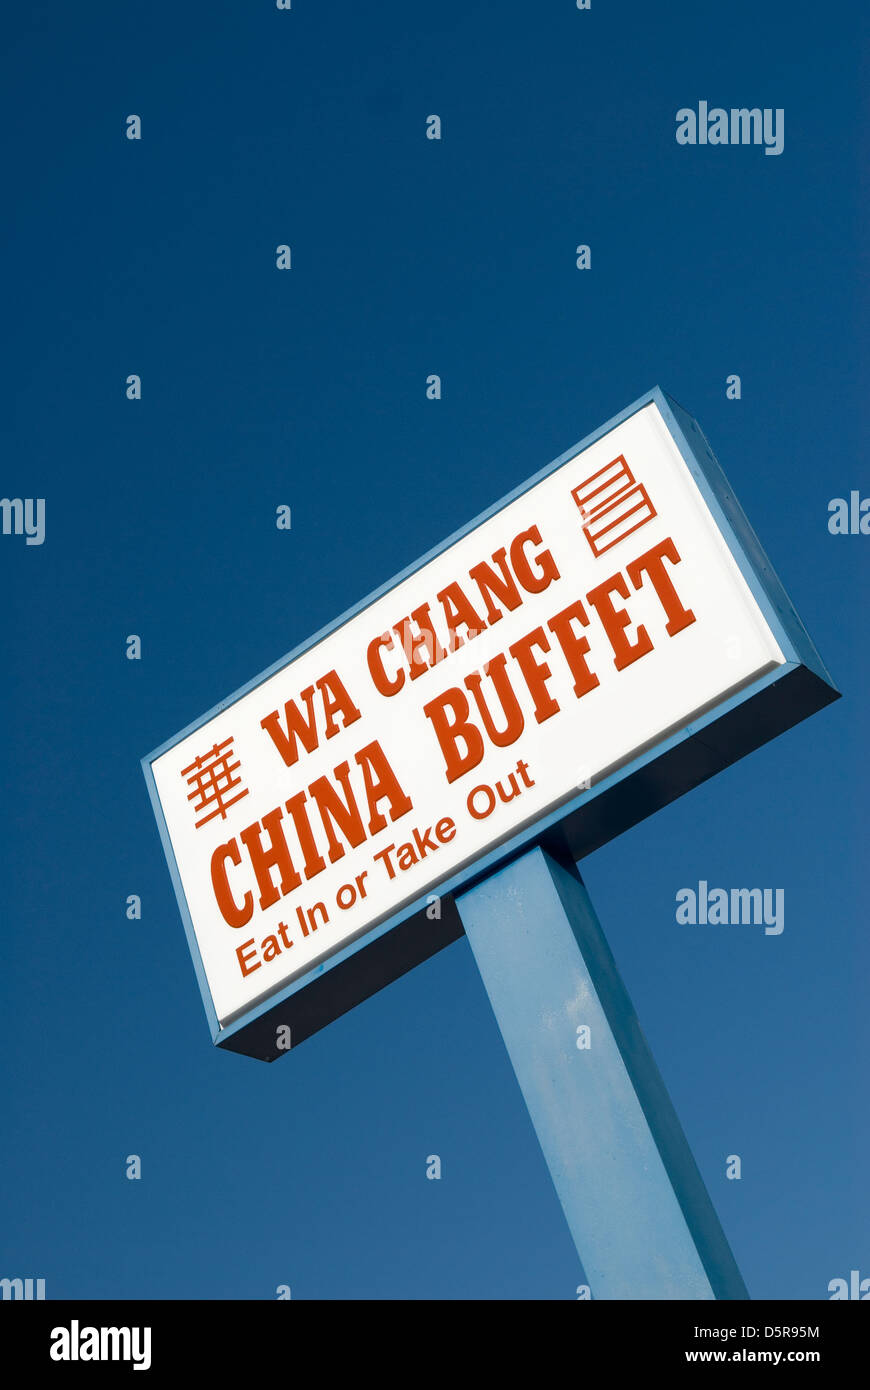 WA Chang China Buffet USA. Stock Photo